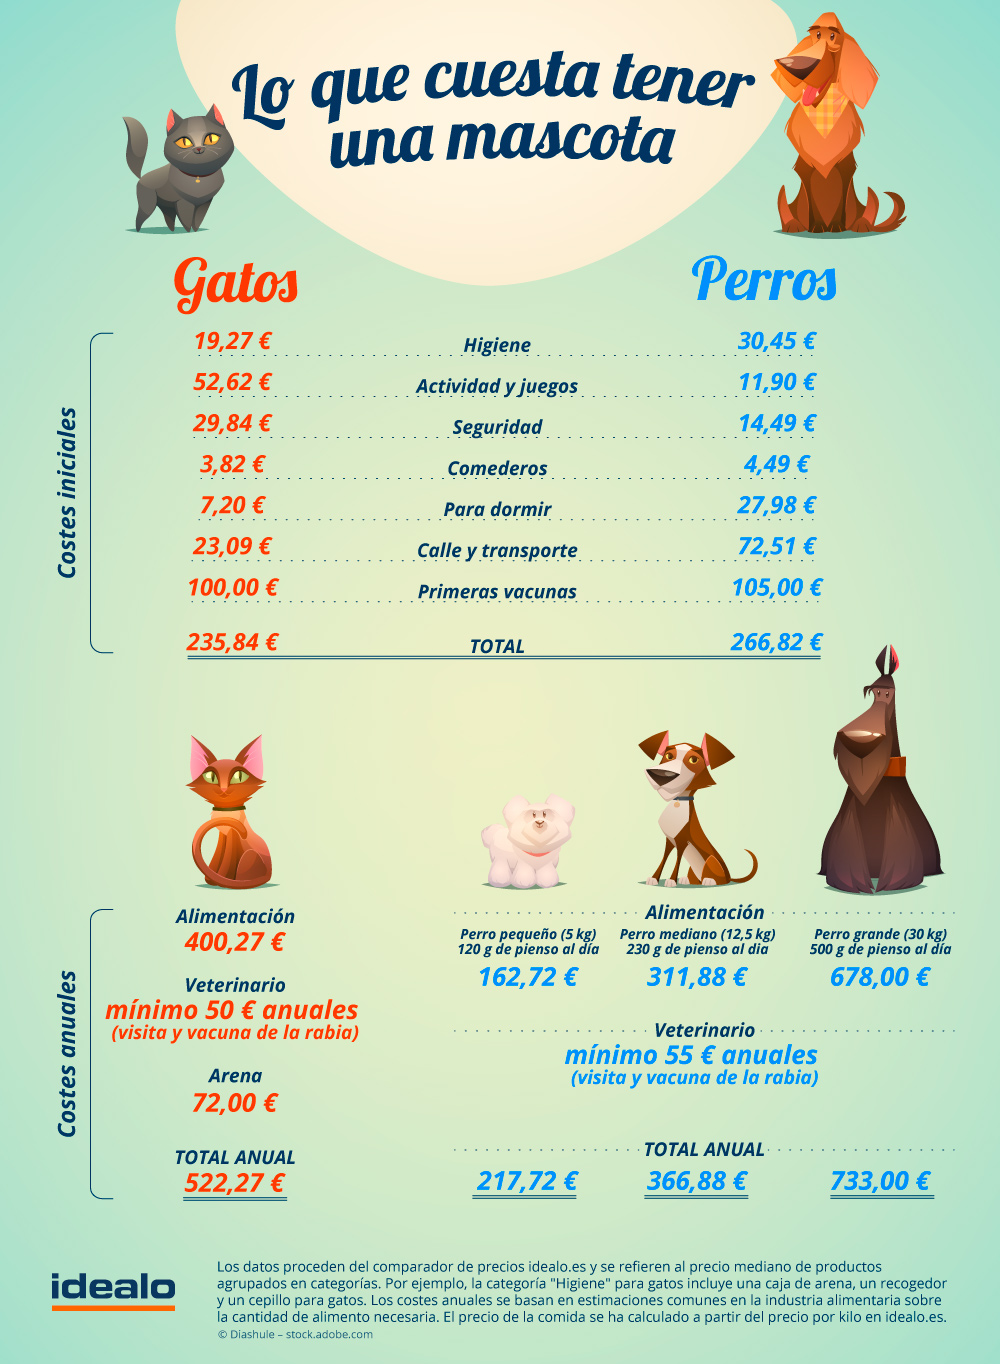 Infografia_idealo_mascotas.jpg